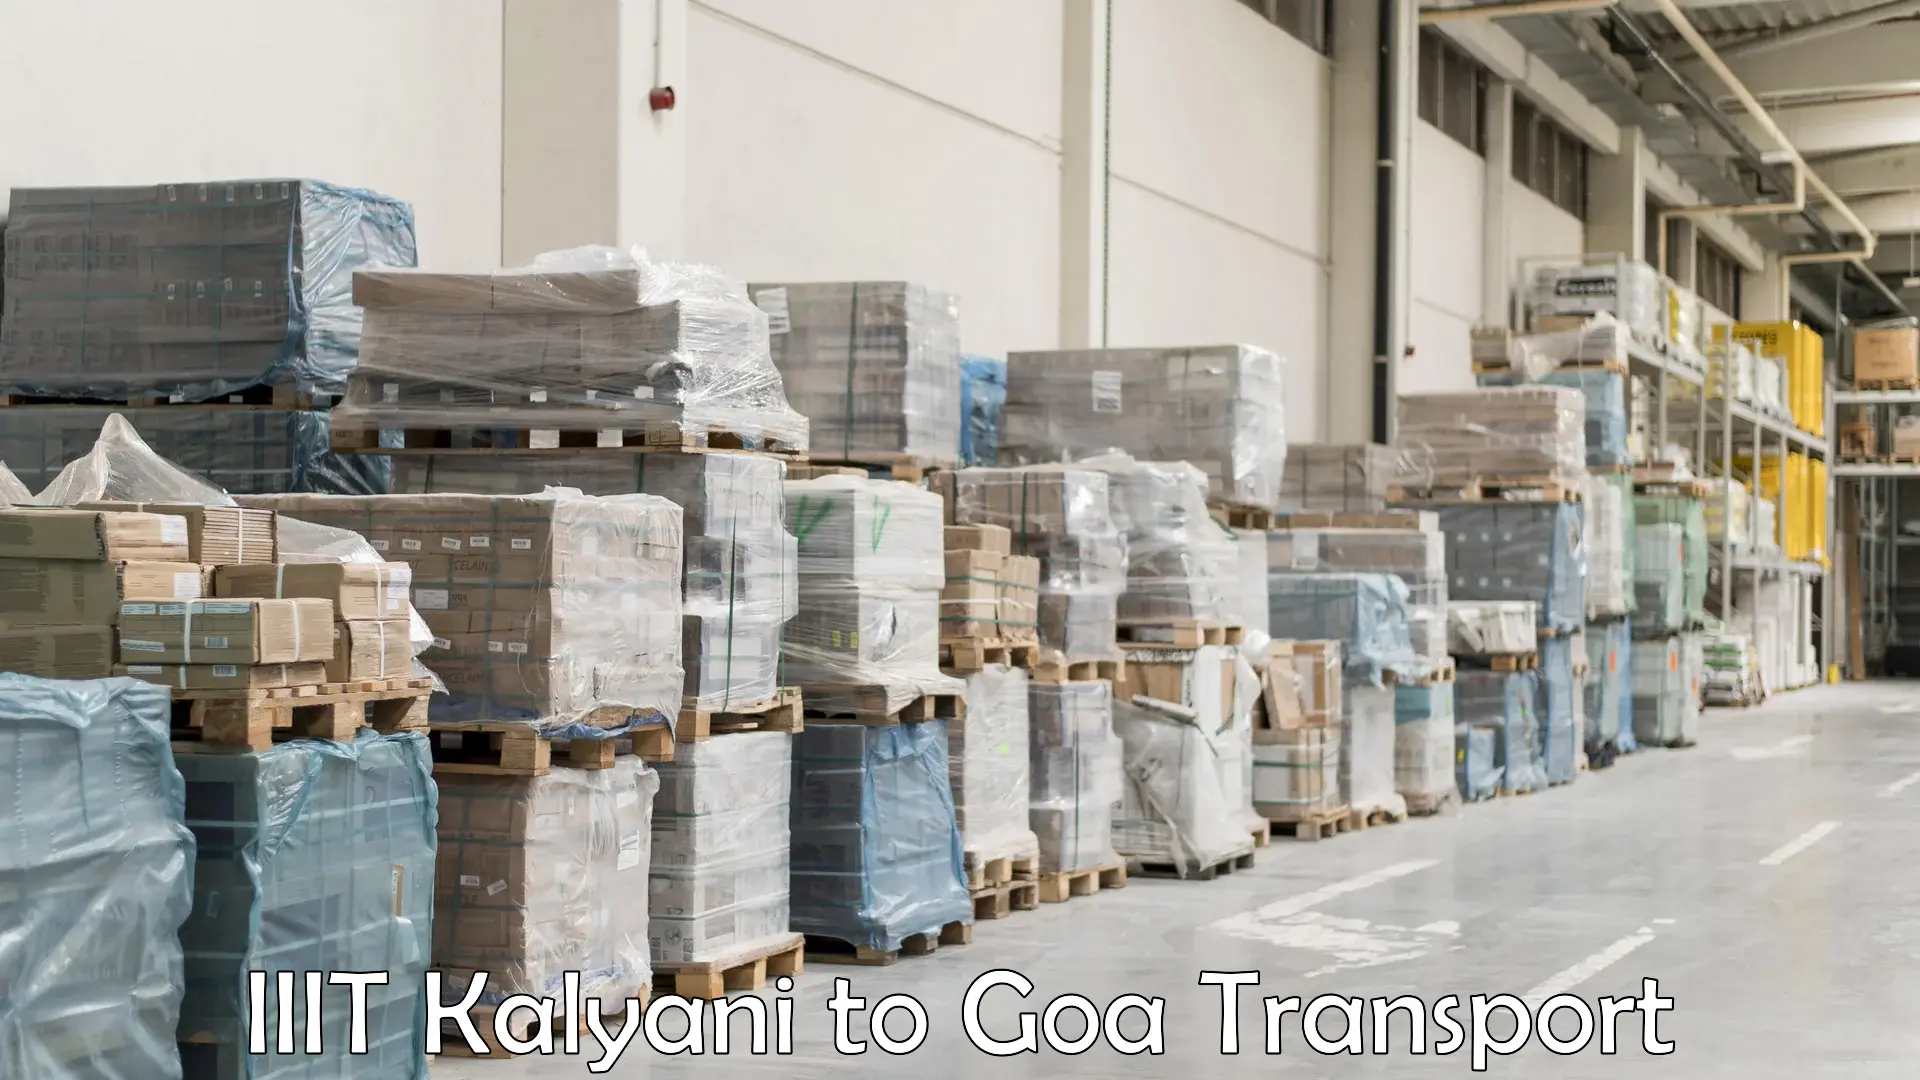 Interstate goods transport IIIT Kalyani to IIT Goa